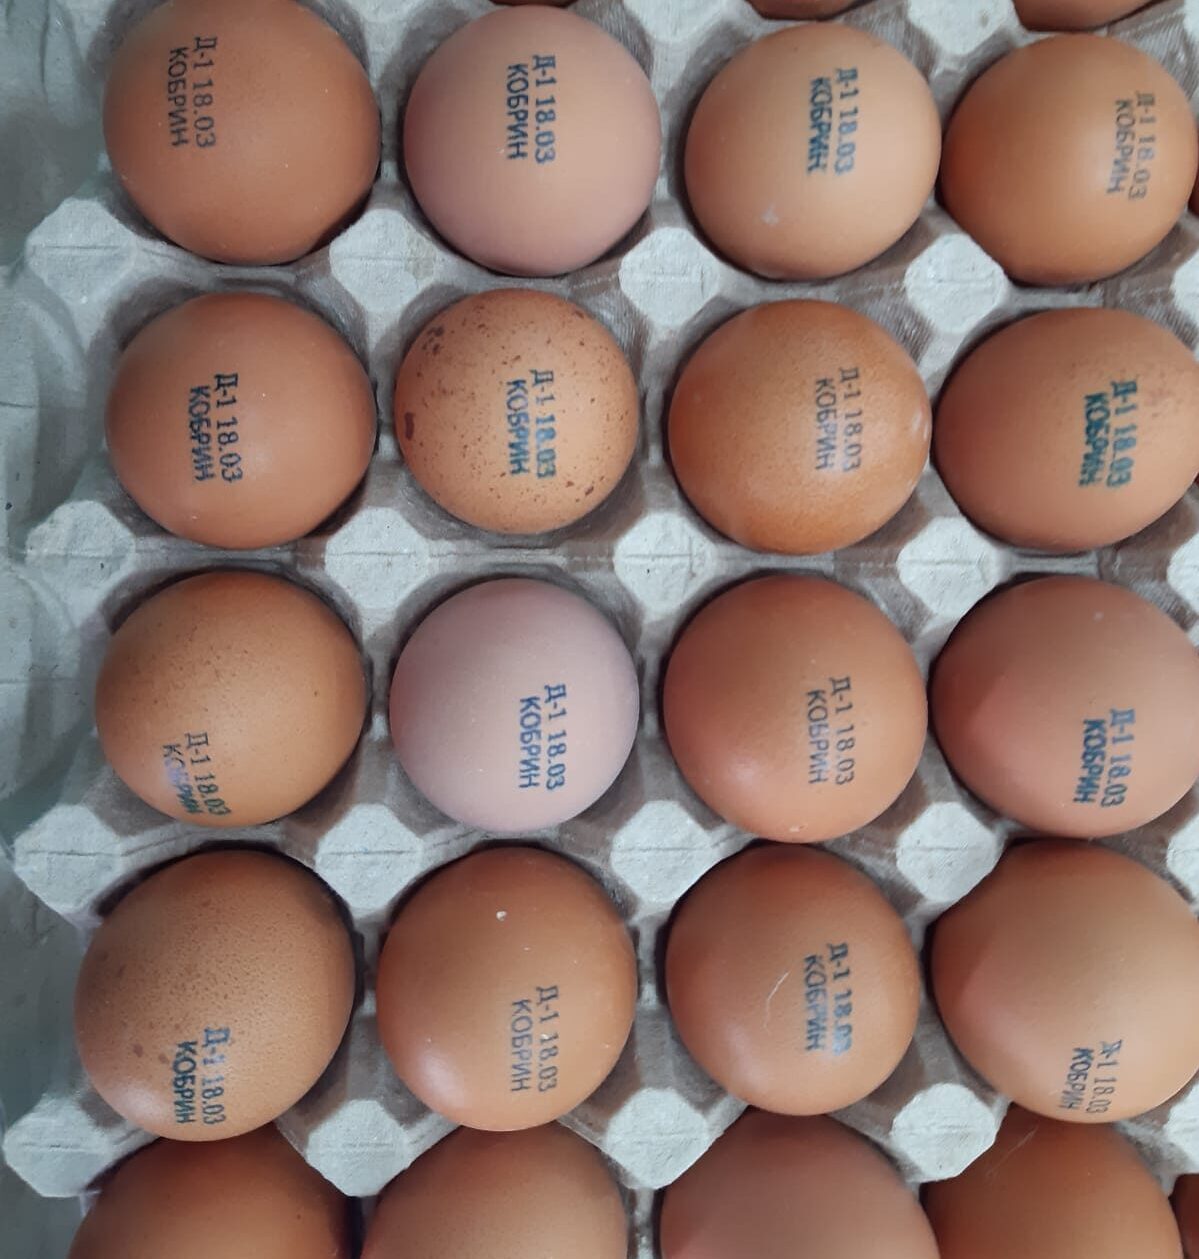 Blue USDA approved FDG ink on eggs RN Mark